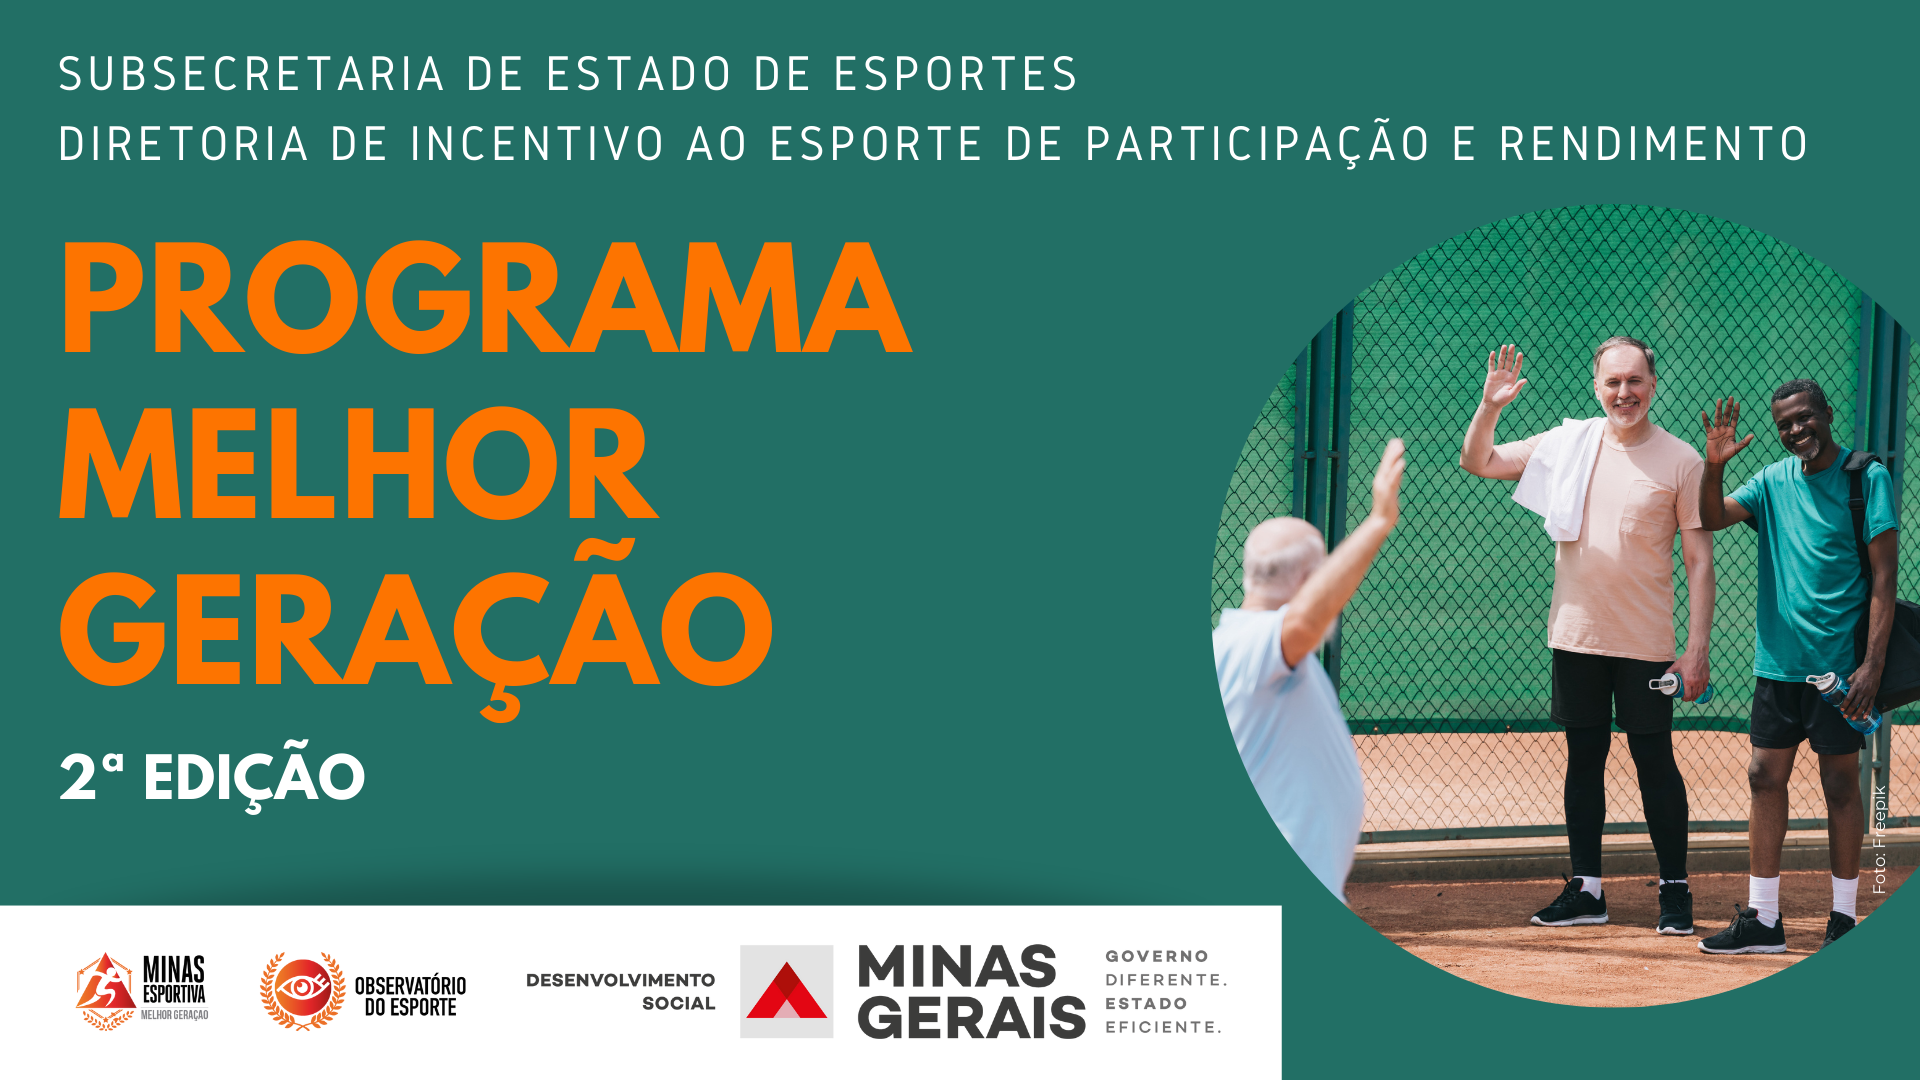 Blog Esporte de Rendimento, Observatório do Esporte de Minas Gerais